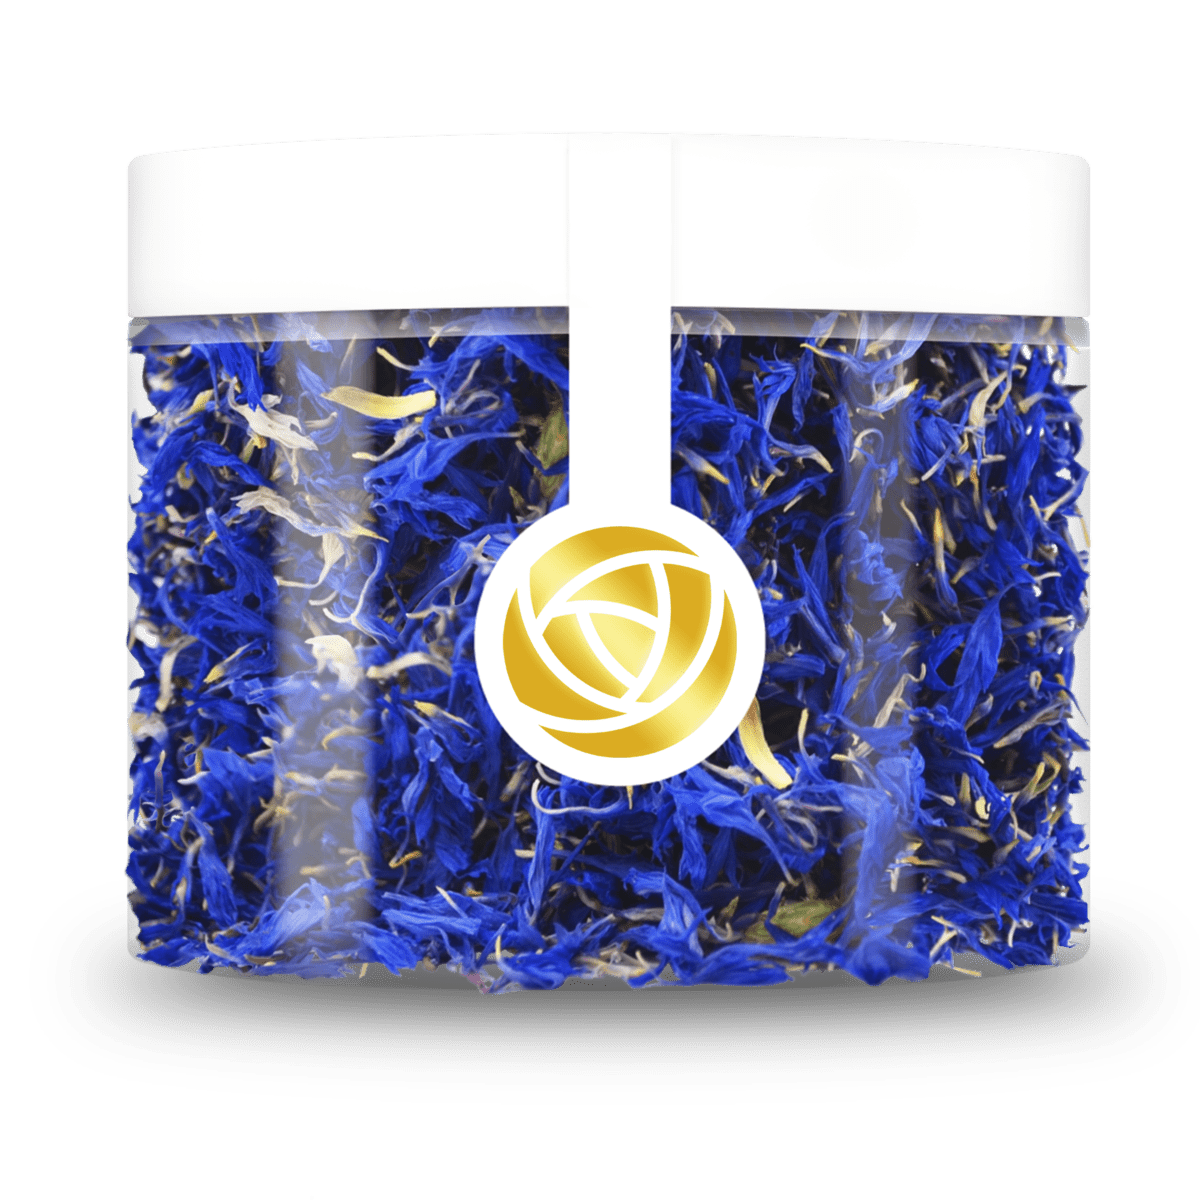 Entdecke die Schönheit blauer Kornblumenblüten bei ROSIE ROSE! Verwende unsere getrockneten Kornblumen in Salaten, Desserts oder als Tee. Jetzt bestellen und genießen! Von ROSIE ROSE im Online-Shop kaufen